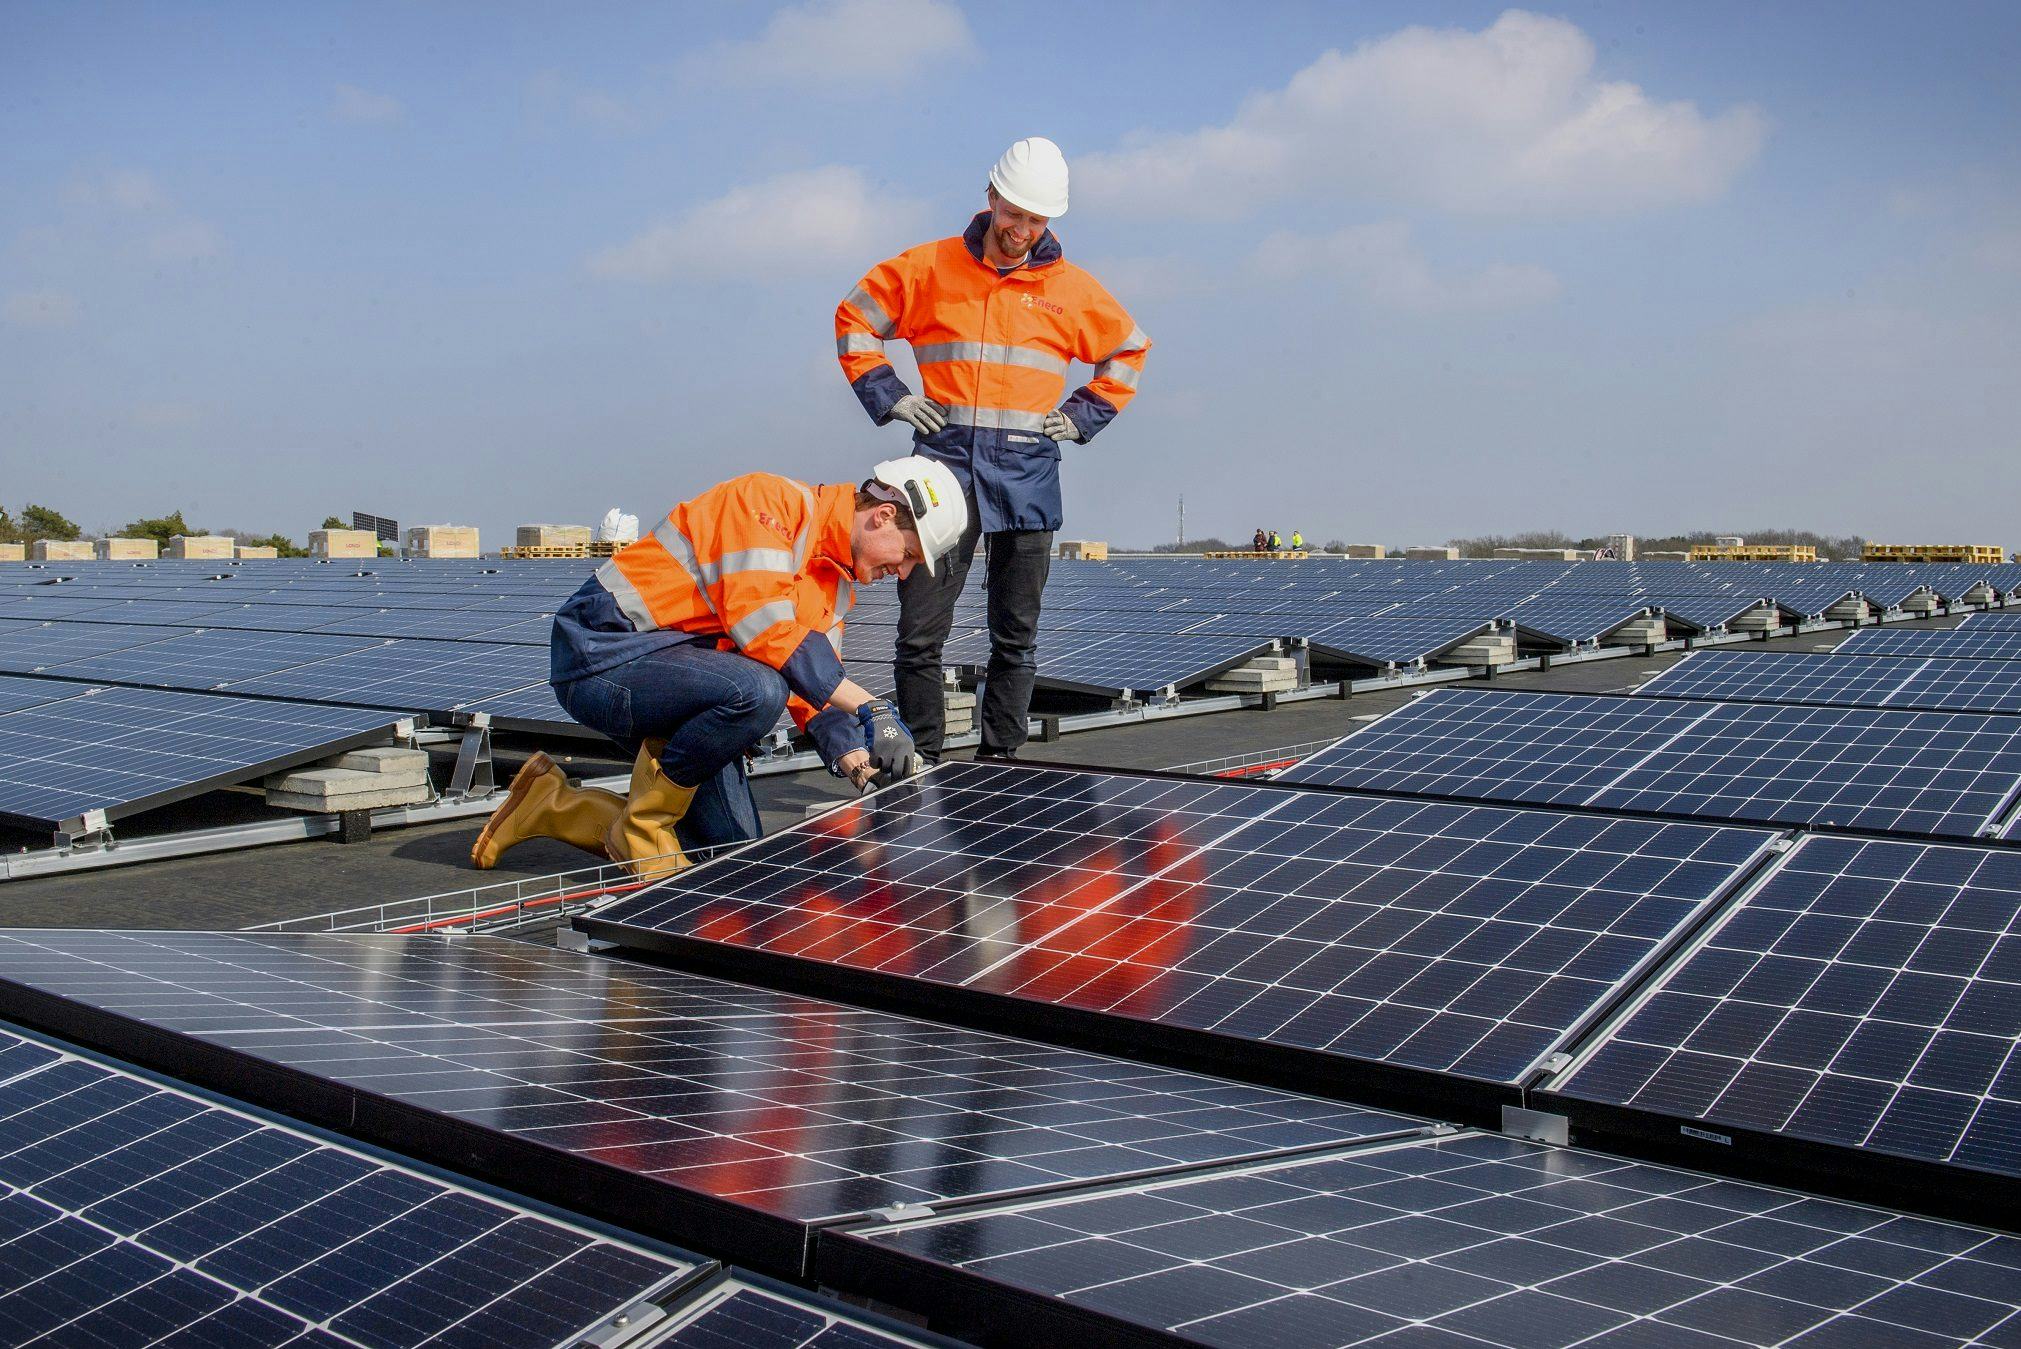 Welke voordelen heeft zakelijk zonnepanelen leasen?